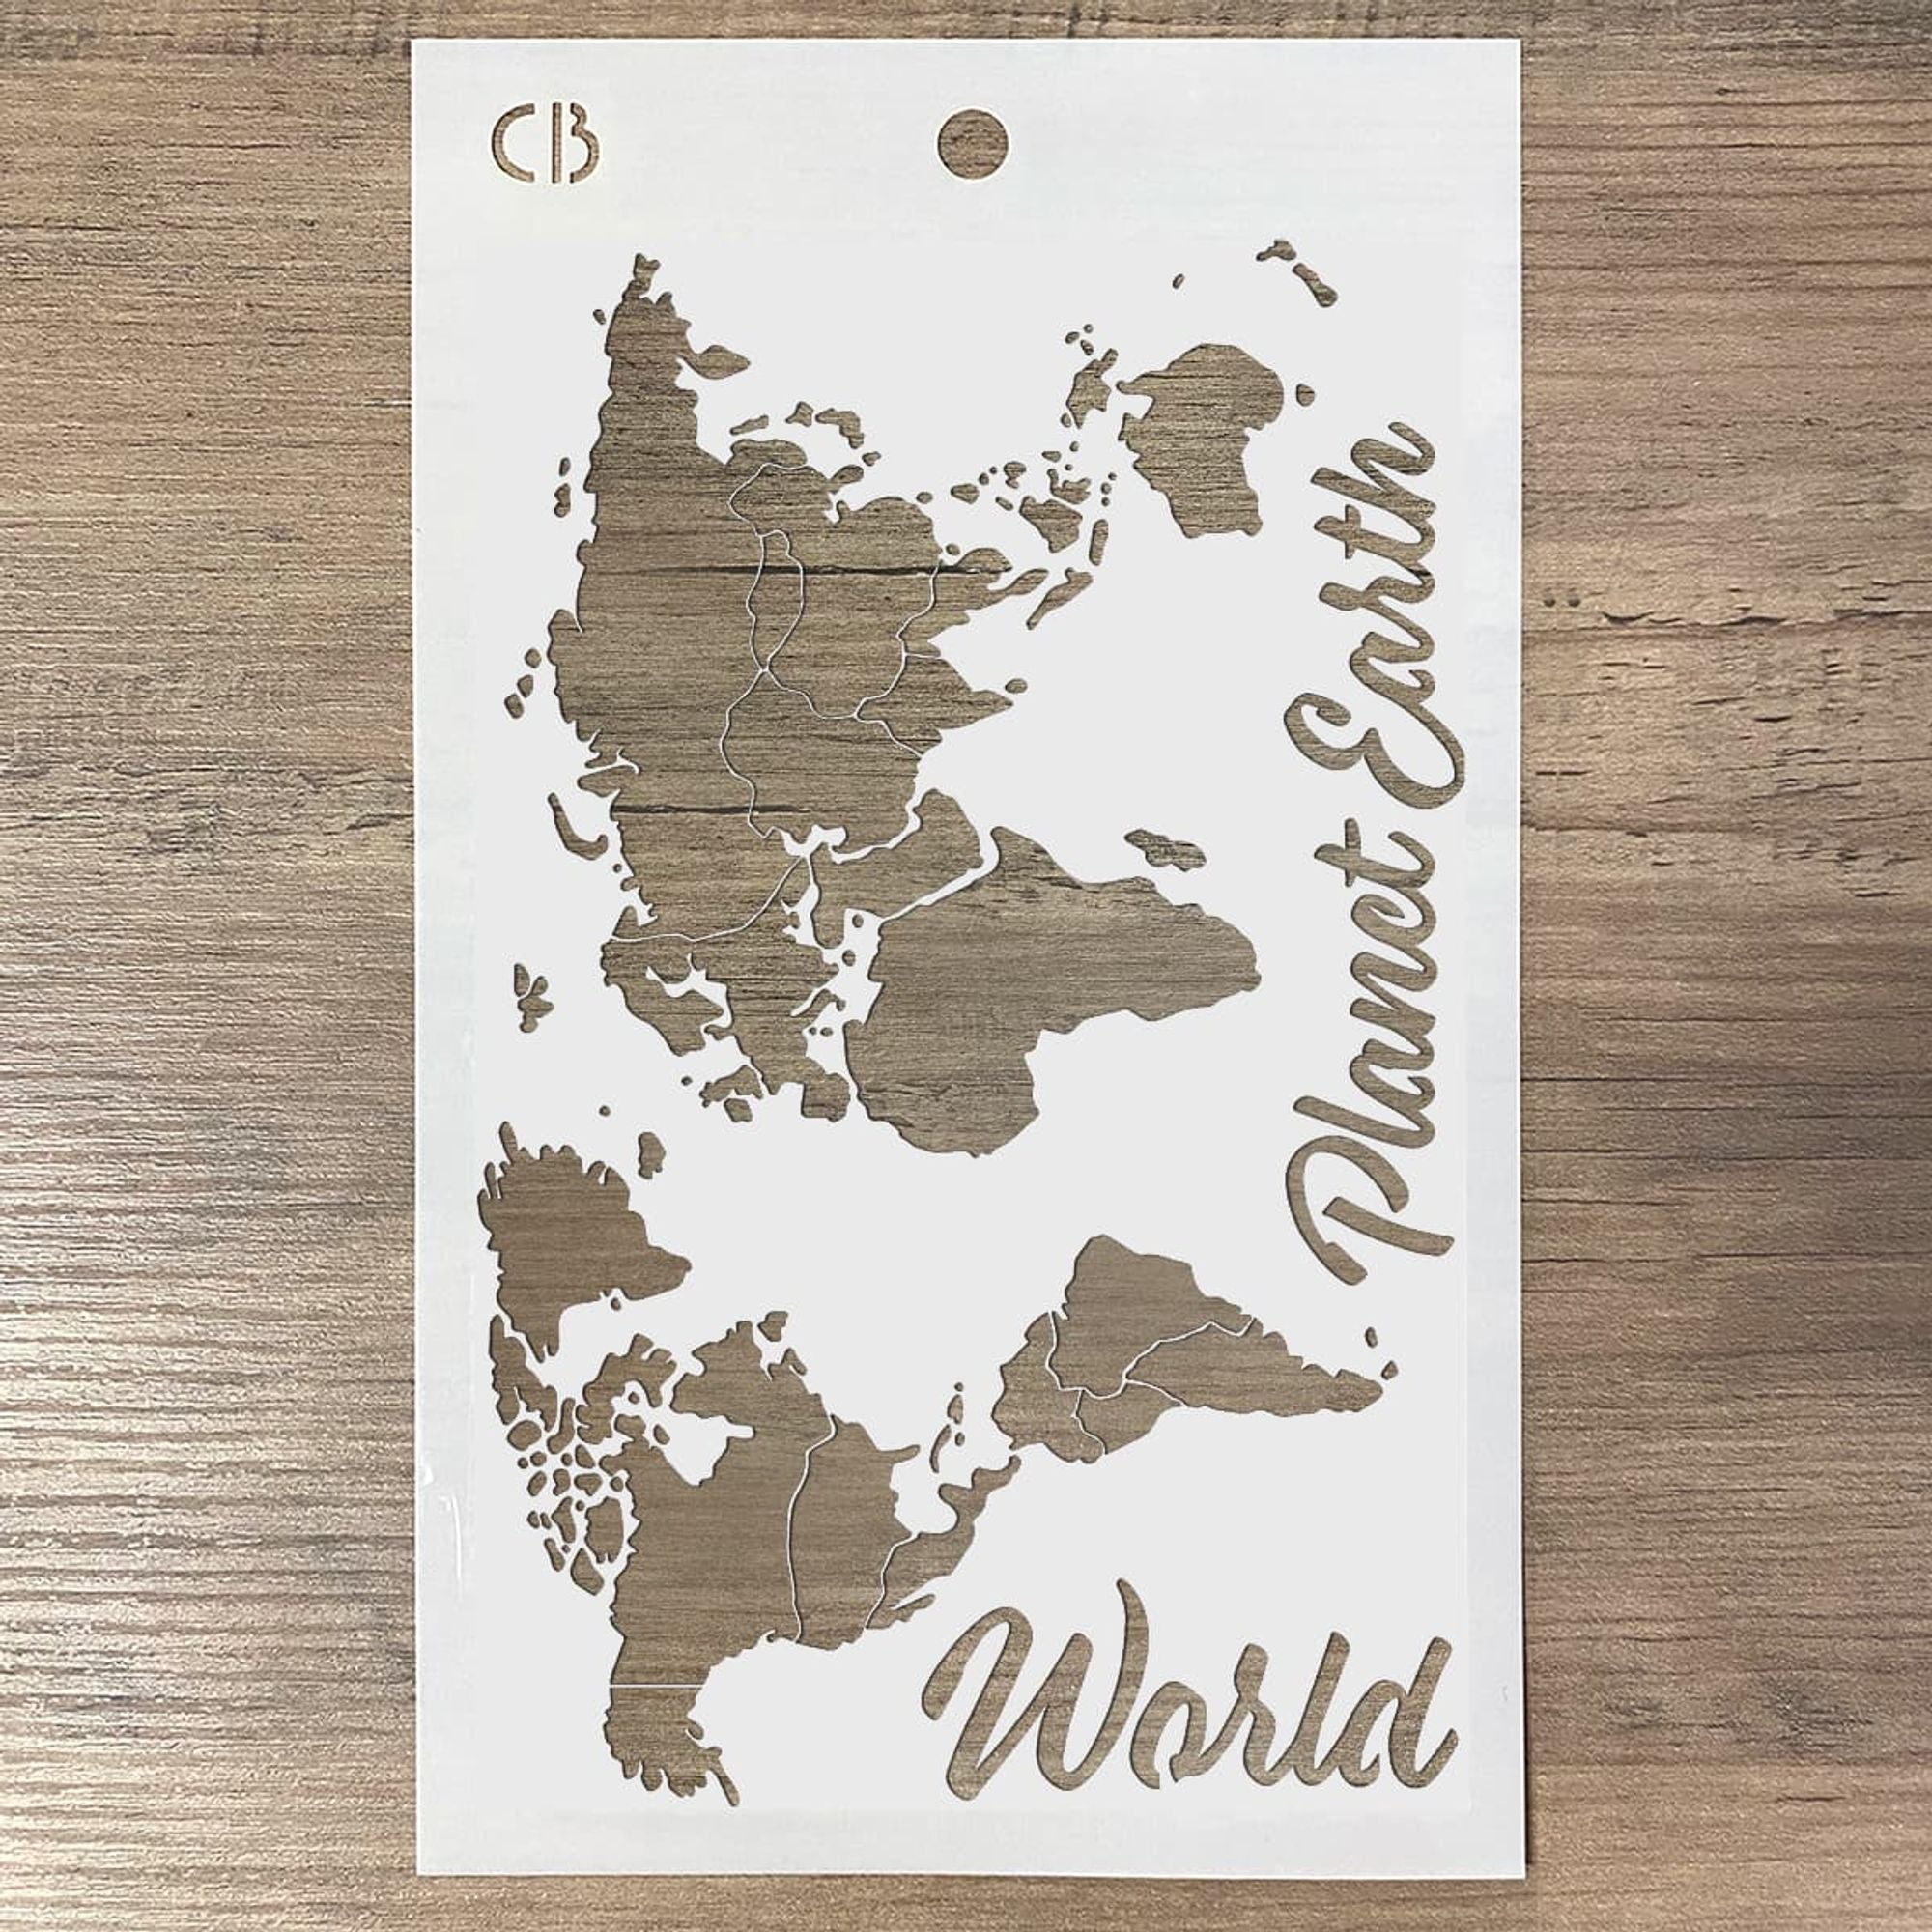 Ciao Bella Texture Stencil 5"x8" World Map